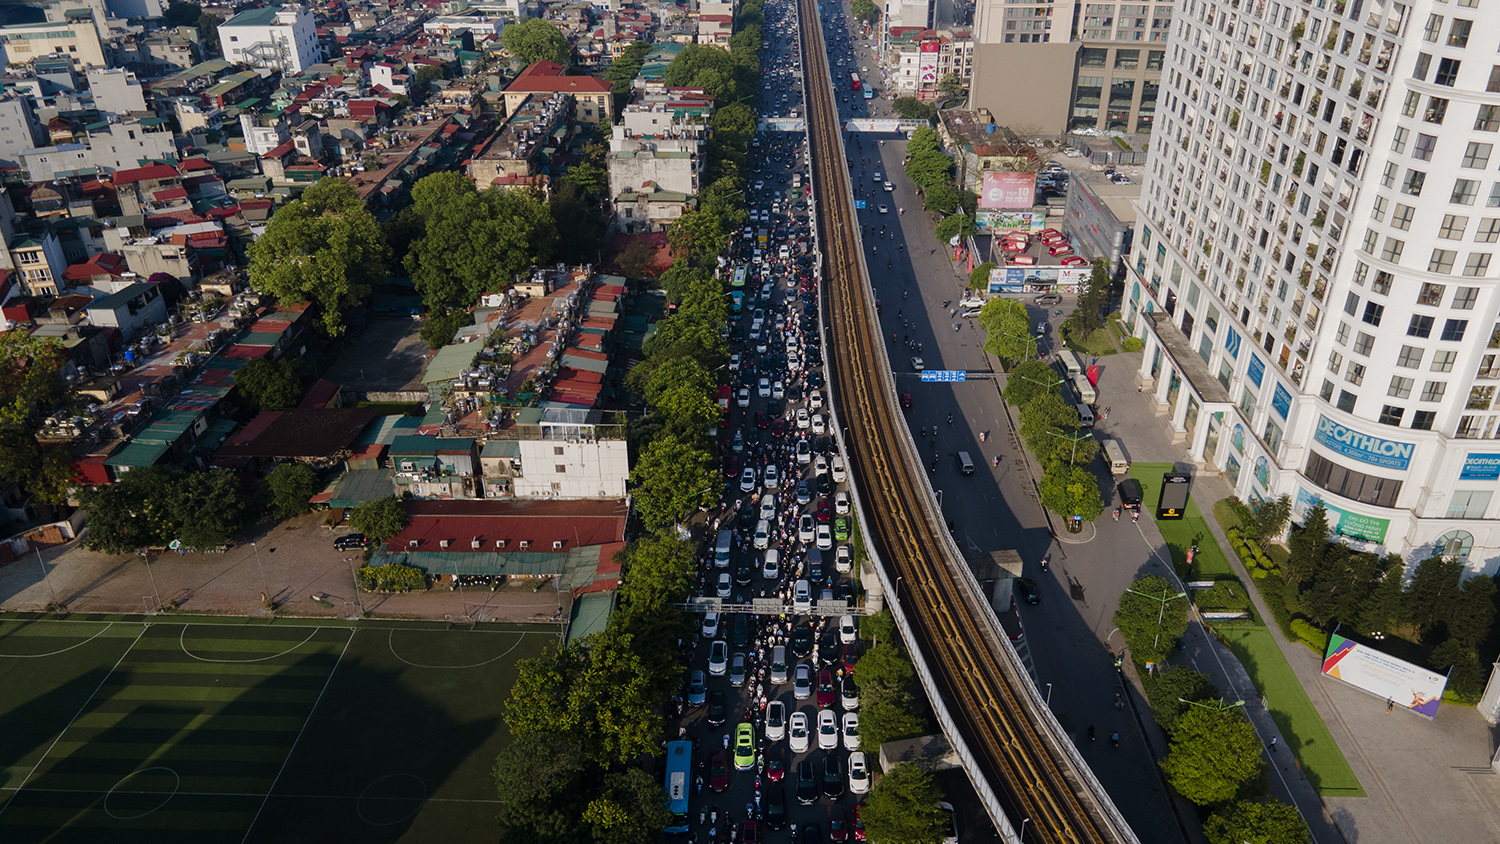 Sáng nay (4/5) trên các tuyến đường dẫn vào cửa ngõ Thủ đô Hà Nội đông nghẹt người trong ngày đầu người dân đi làm sau kỳ nghỉ lễ 30/4-1/5 kéo dài 4 ngày